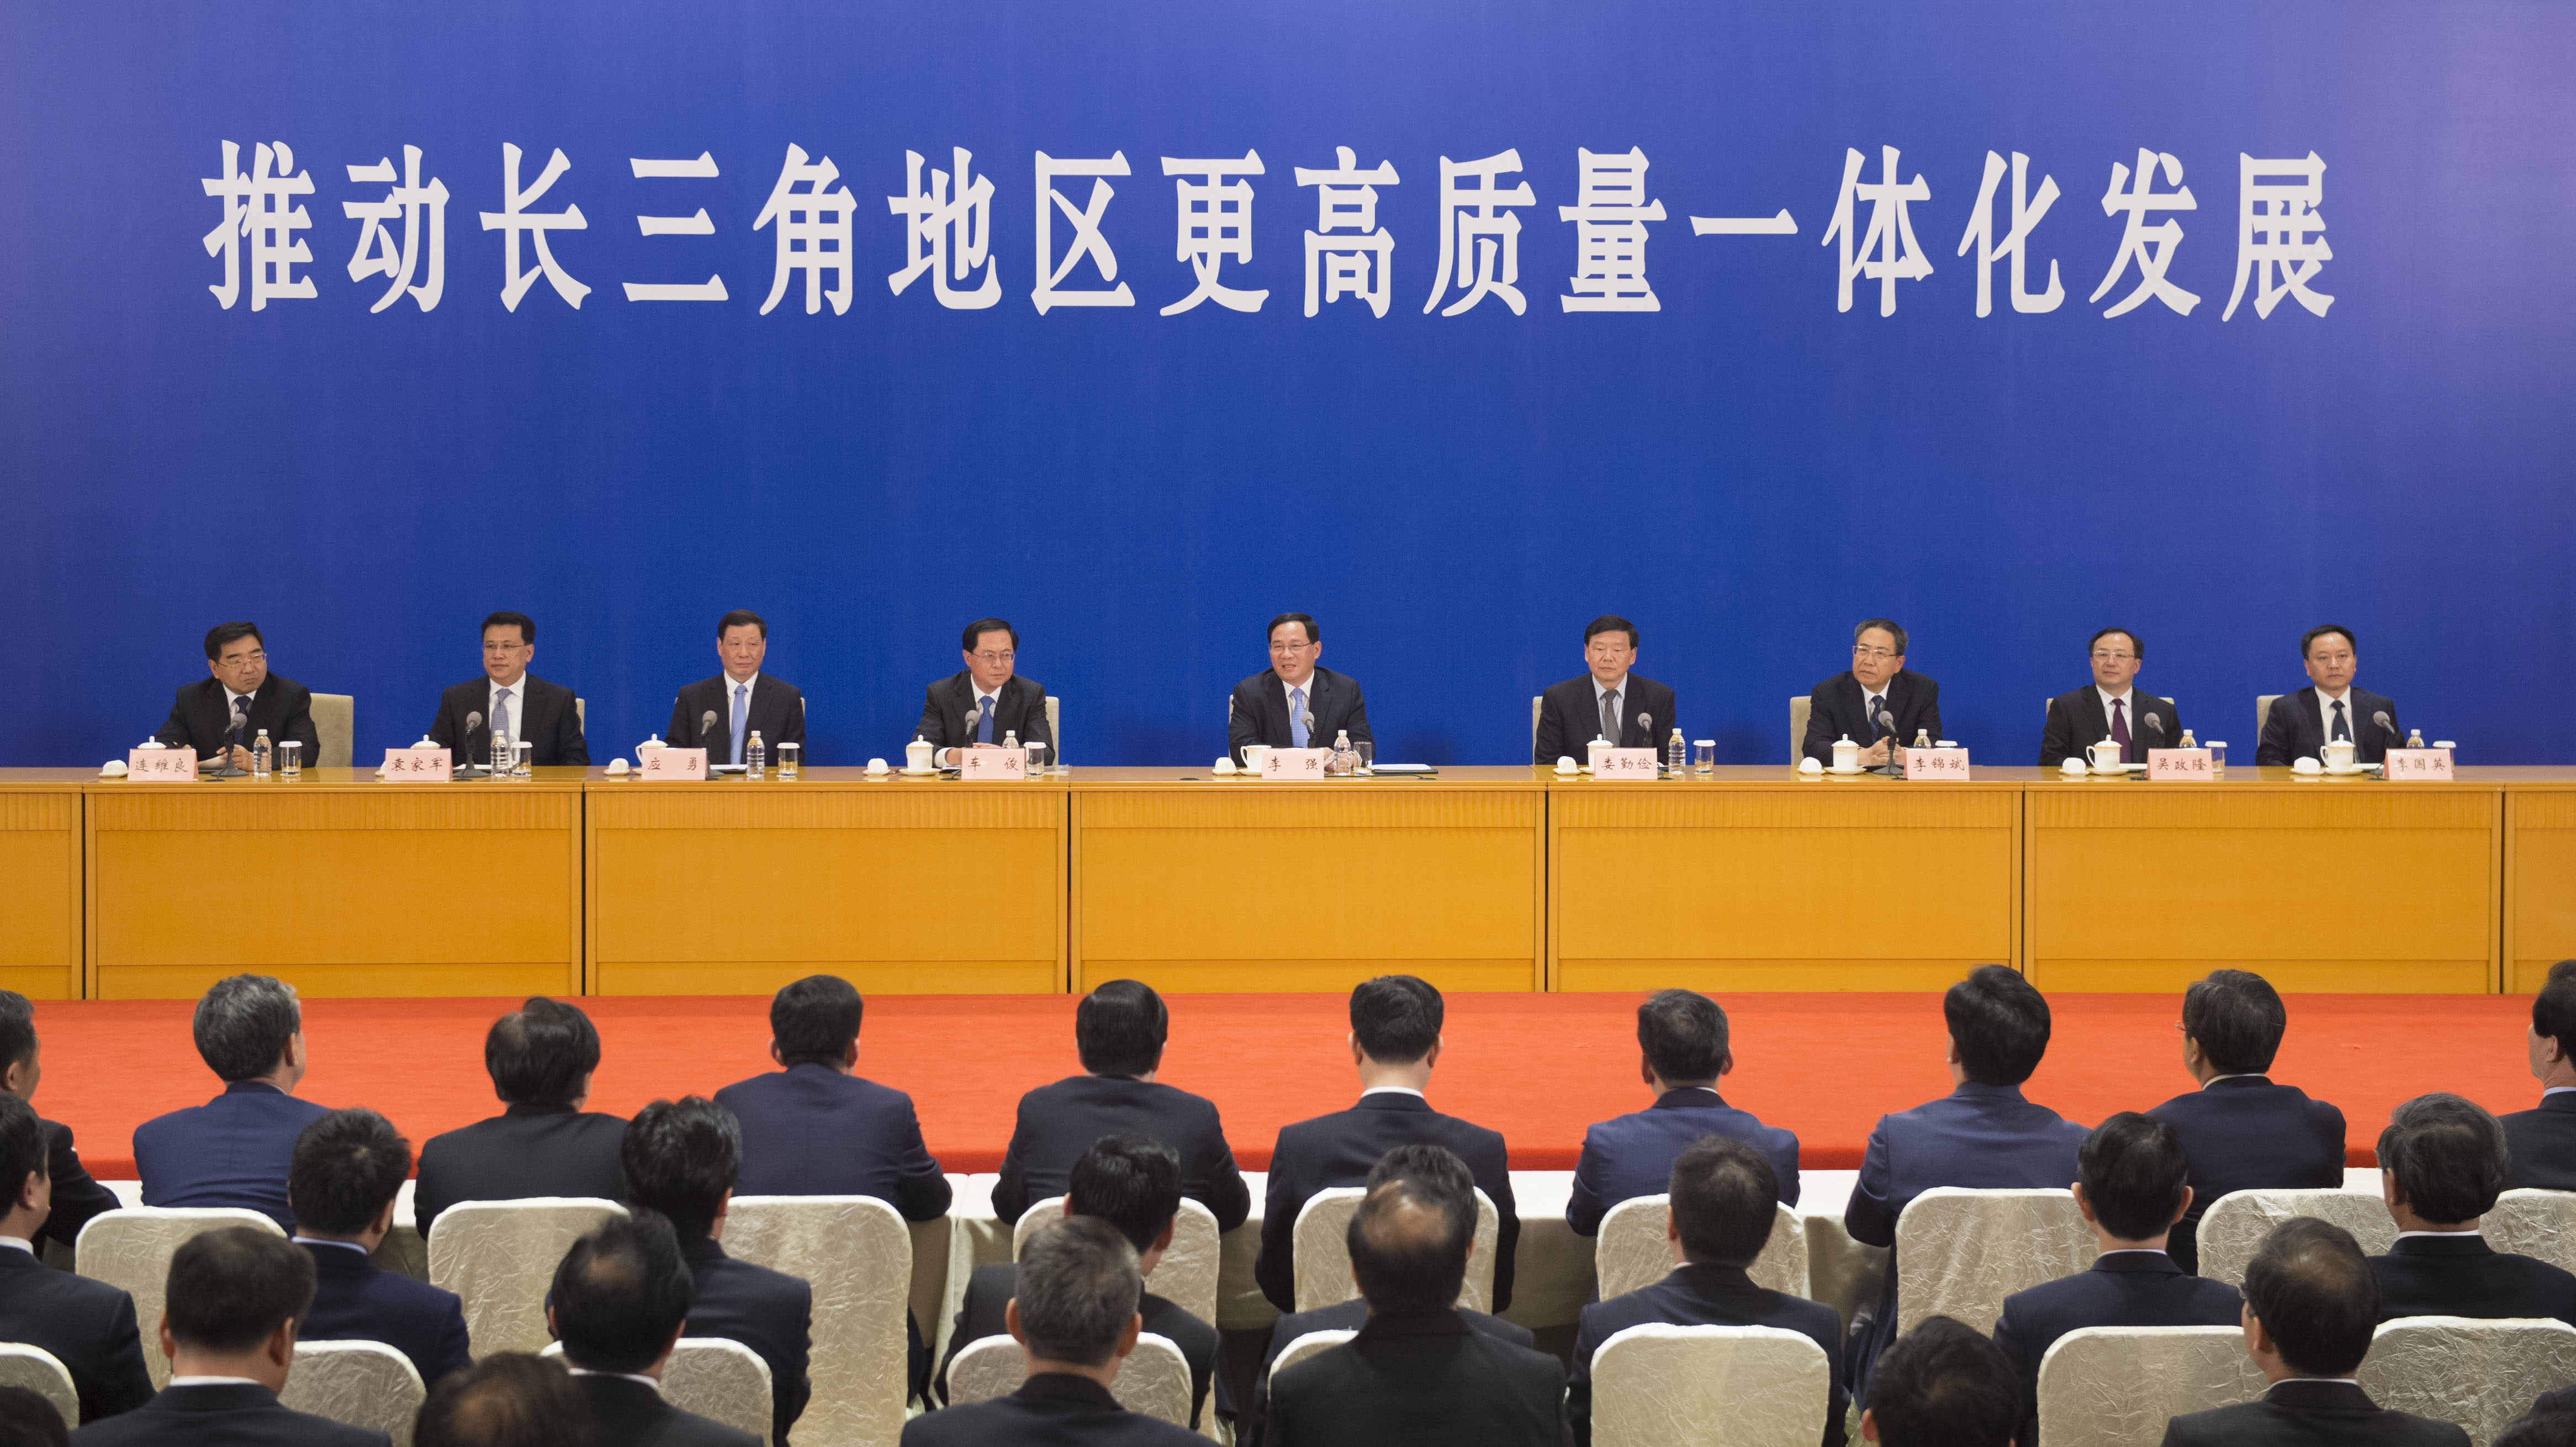 2018年度长三角地区主要领导座谈会在上海召开 会后举行成果发布会